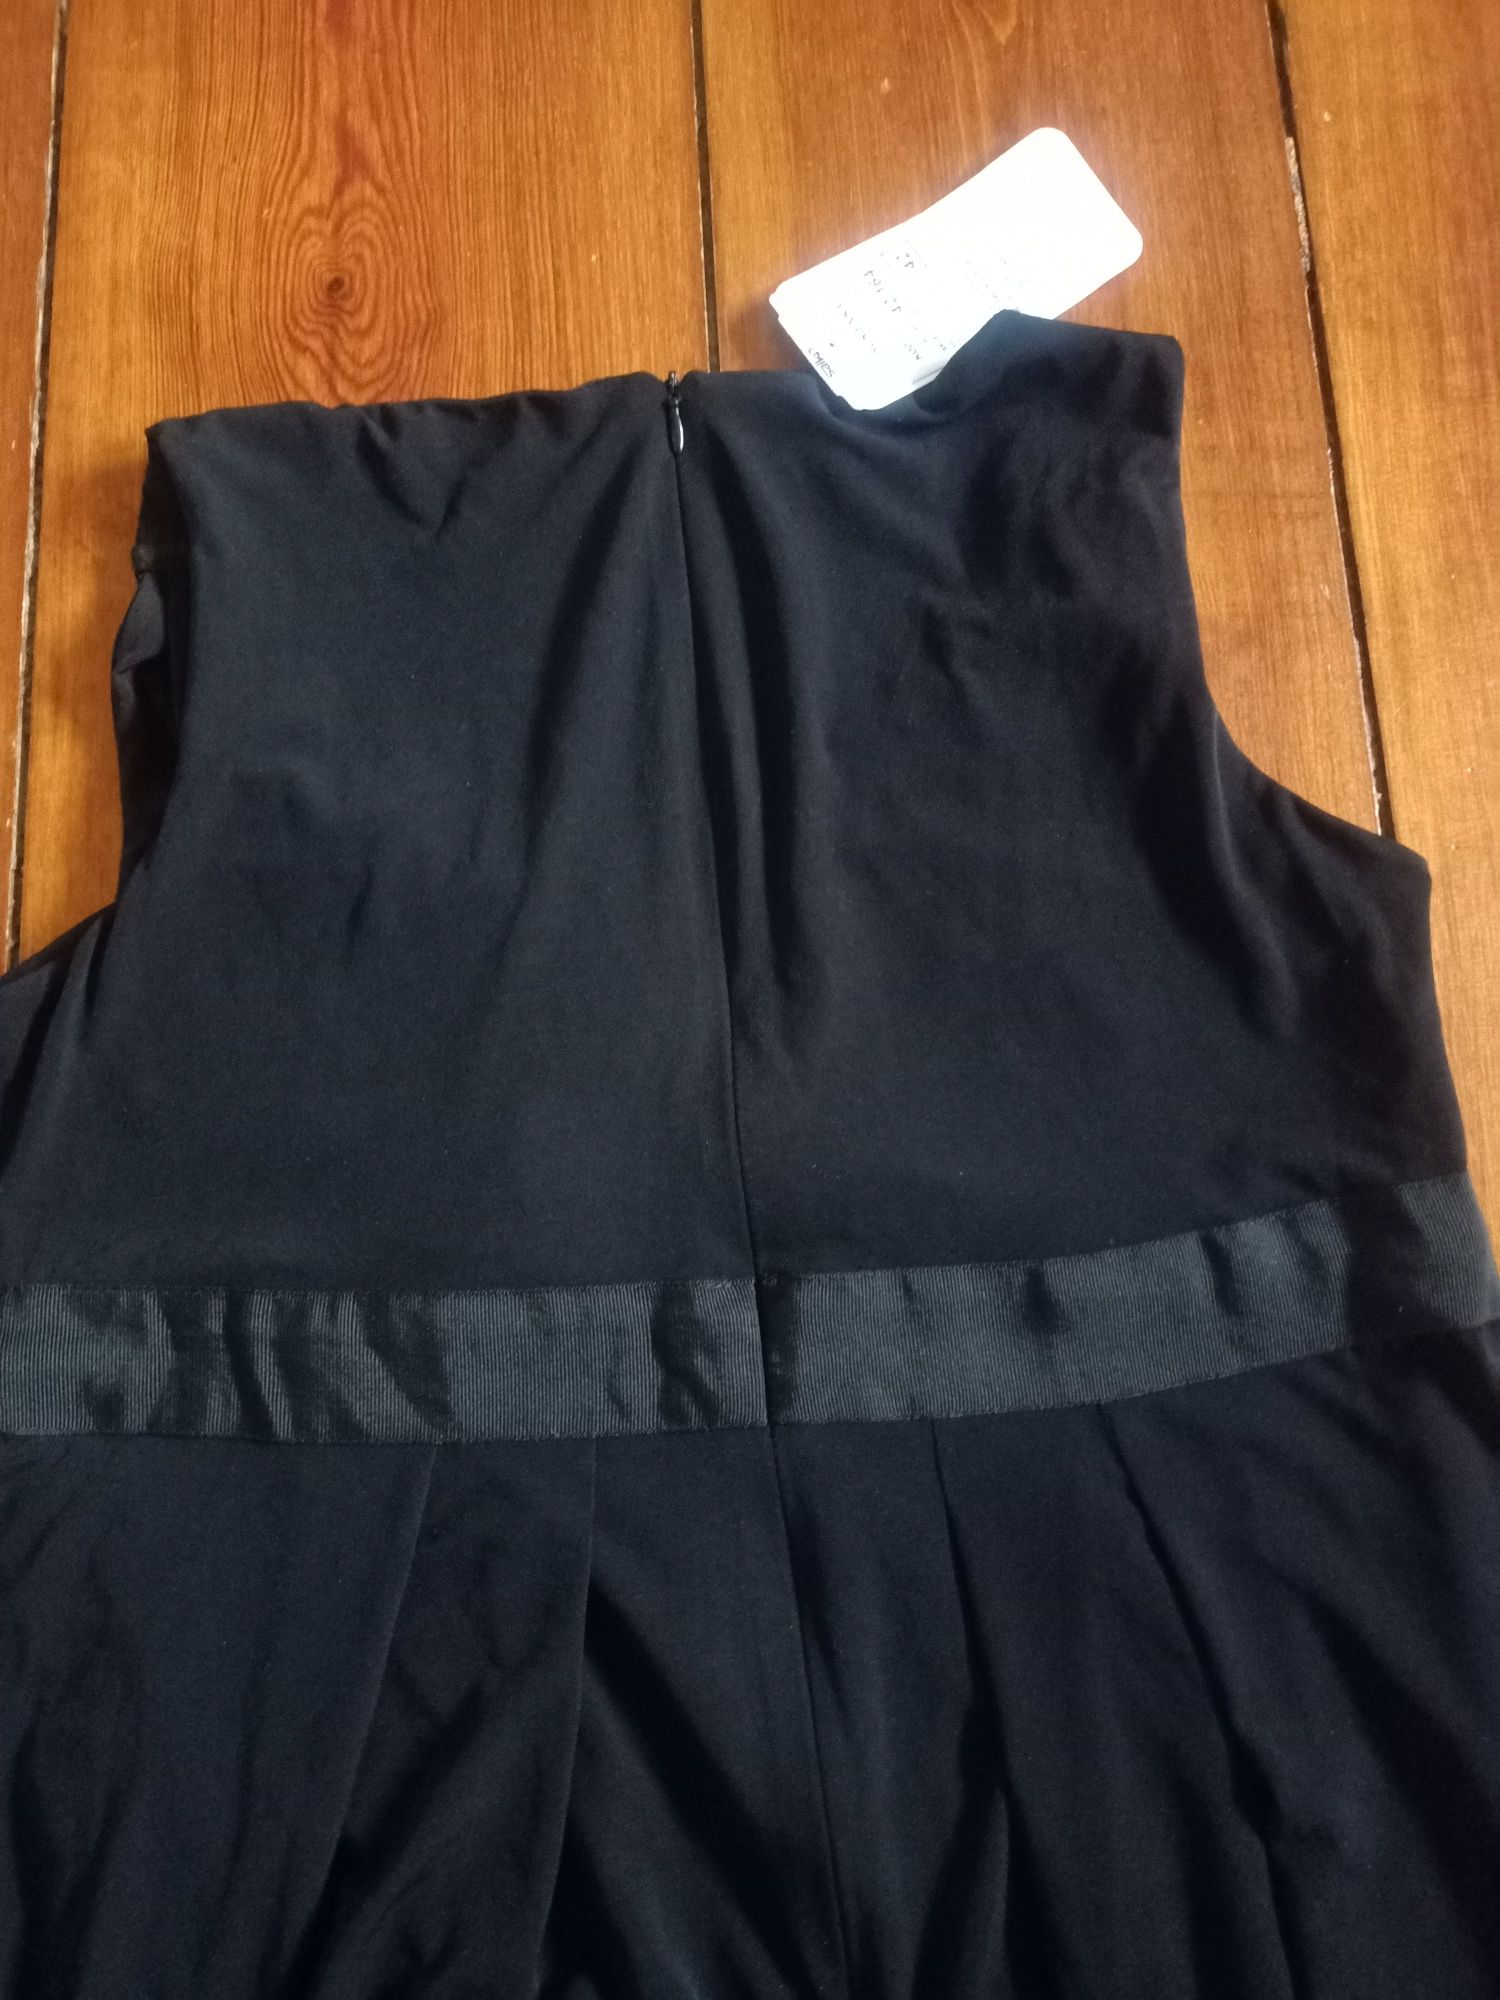 Nowa sukienka czarna salko rozmiar 42 xl